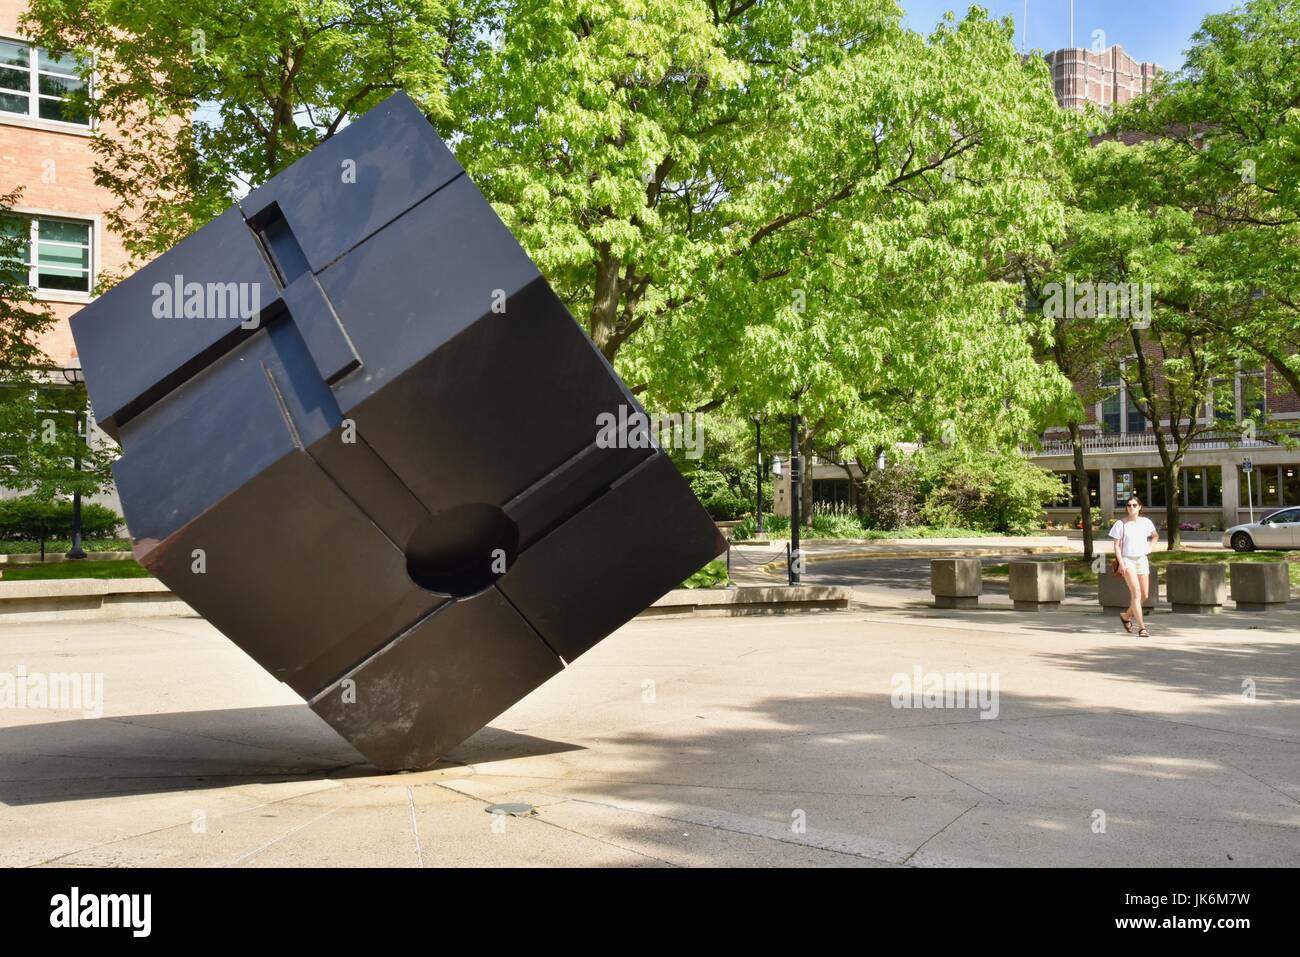 Le Cube (Endover), une sculpture extérieure sur l'affichage en parc public à l'Université du Michigan campus, Ann Arbor, Michigan, jour, Union européenne à l'arrière. Banque D'Images